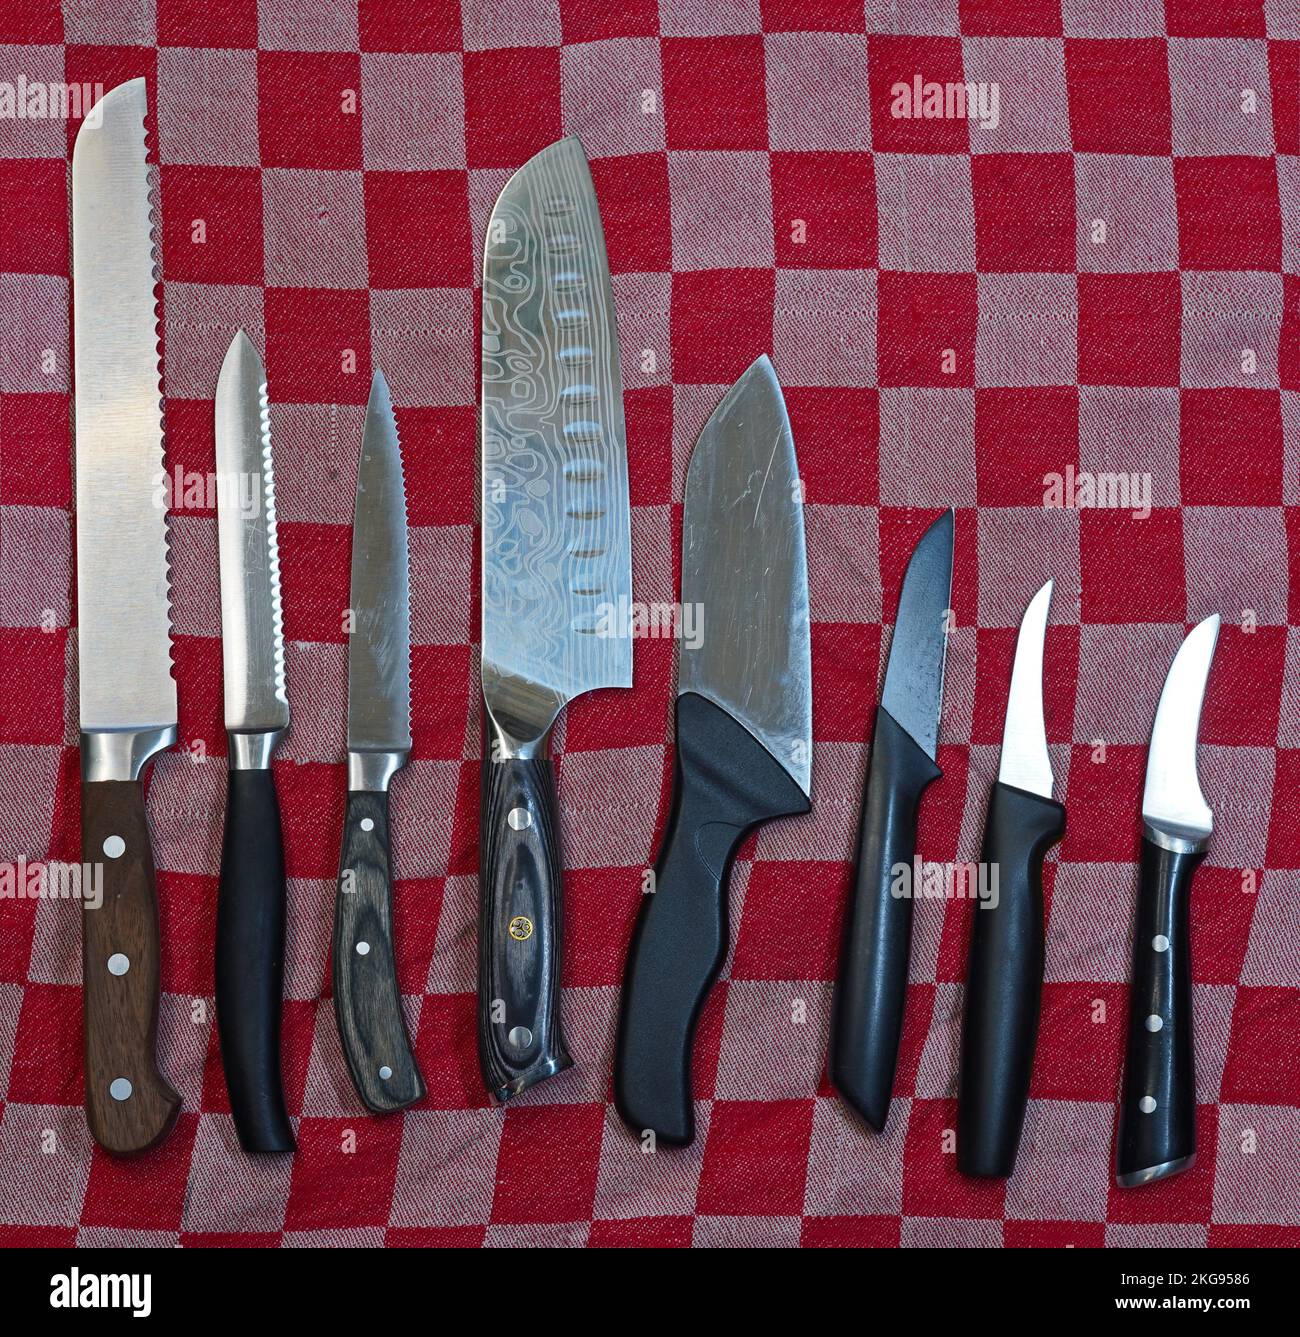 Acht Küchenmesser auf einem rot-weißen karierten Handtuch. Das erste ist ein Brotmesser. Als nächstes ein Tomatenmesser. Das vierte ist ein japanisches Gyuto-Messer. Stockfoto